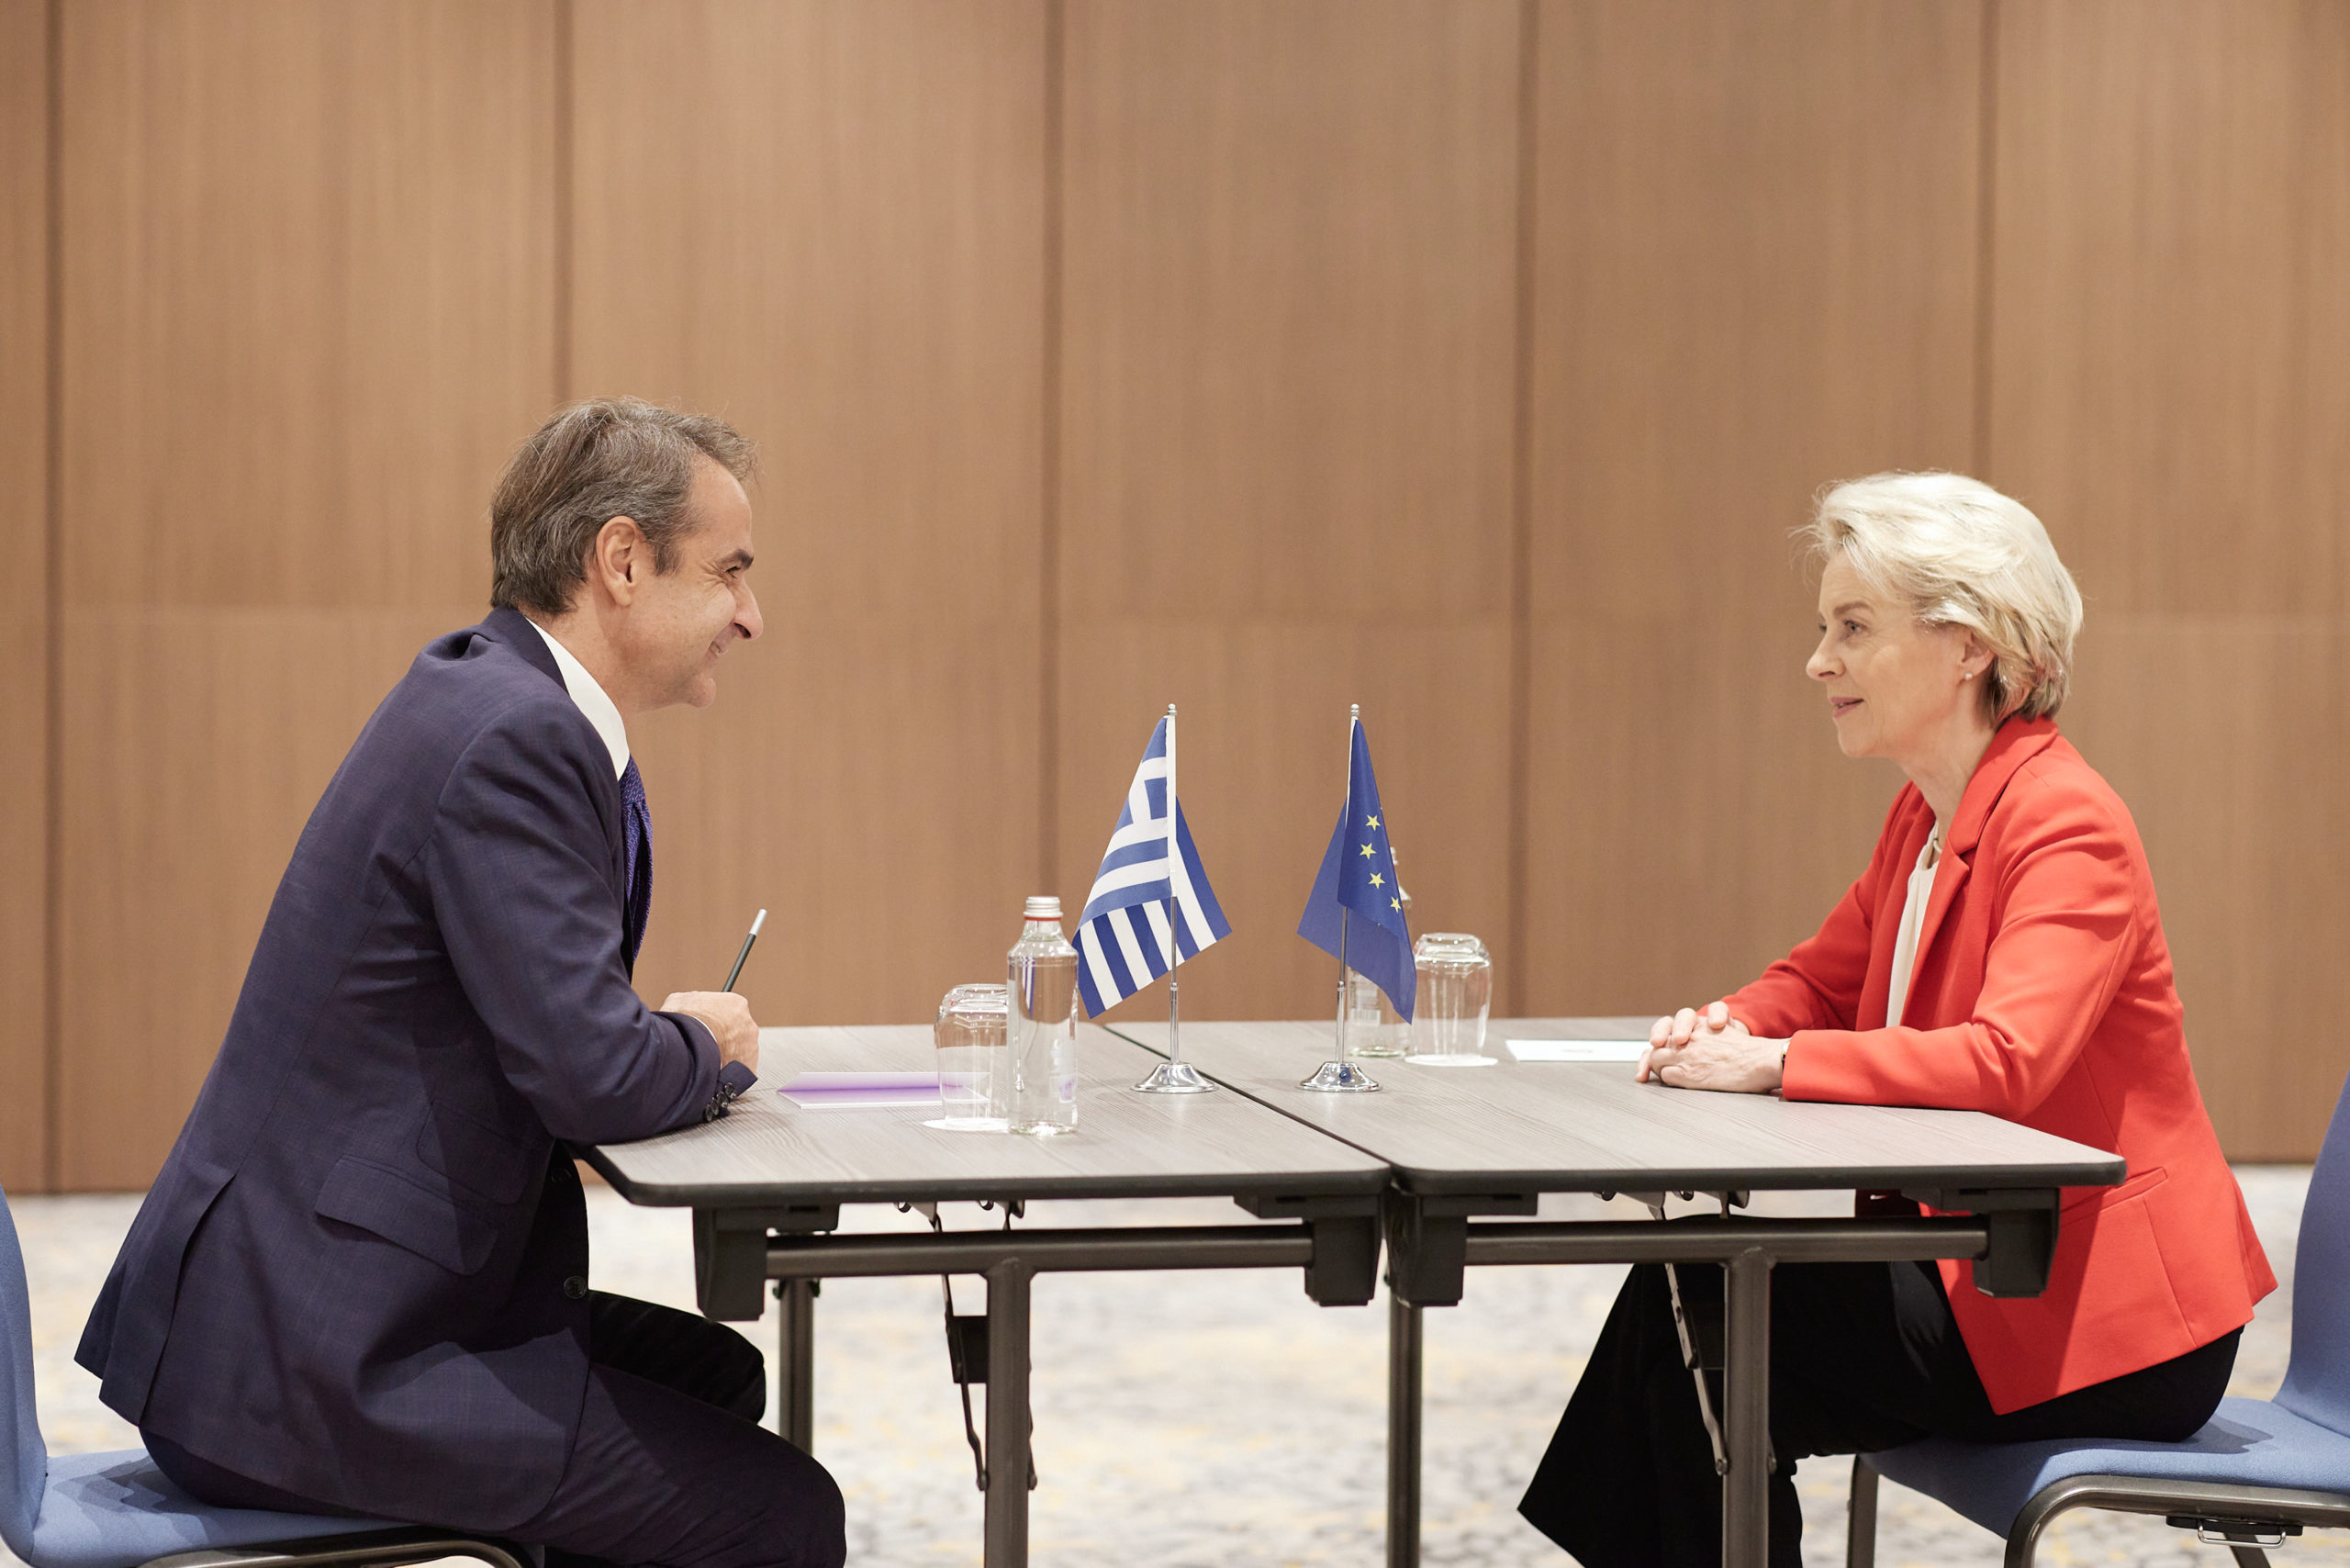 Αίτημα Μητσοτάκη σε Φον ντερ Λάιεν για τον αναθεωρητισμό της Τουρκίας – Η ΕΕ να στηρίξει αποφασιστικά την Ελλάδα